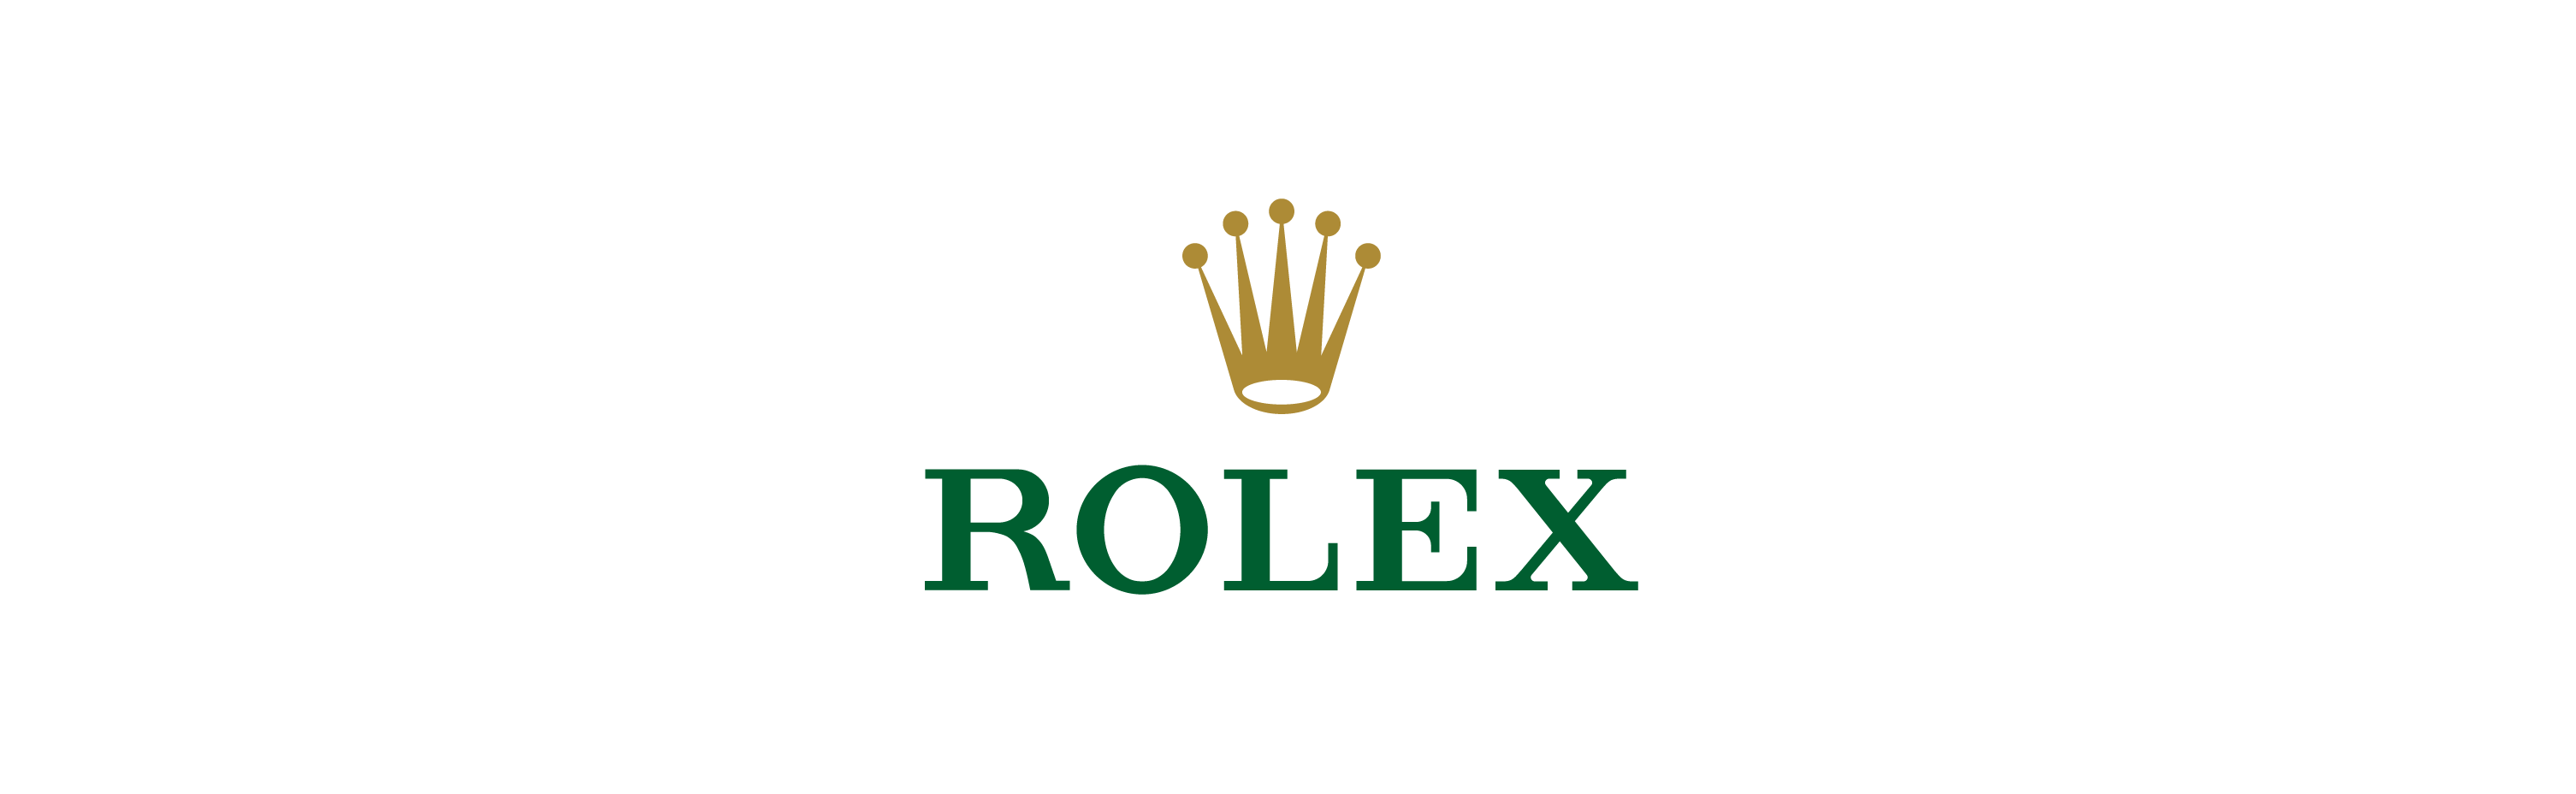 rolex logo wallpaper hd,logo,green,text,font,brand